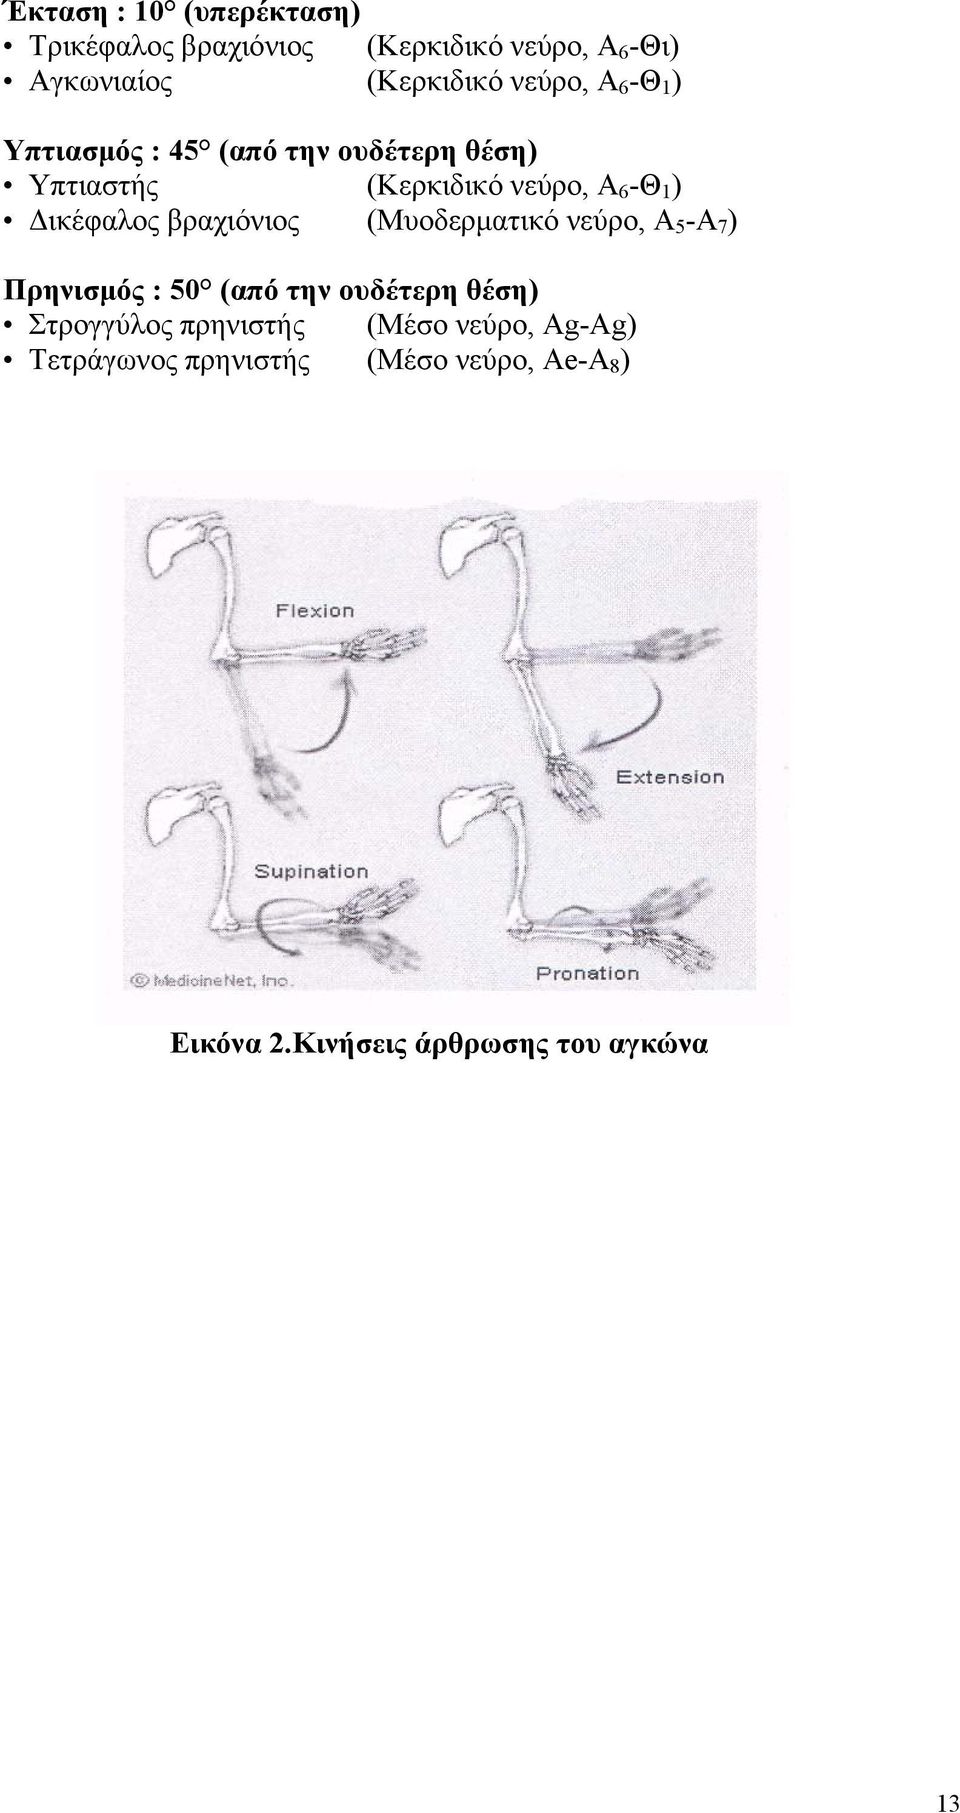 Δικέφαλος βραχιόνιος (Μυοδερματικό νεύρο, Α 5 -Α 7 ) Πρηνισμός : 50 (από την ουδέτερη θέση)